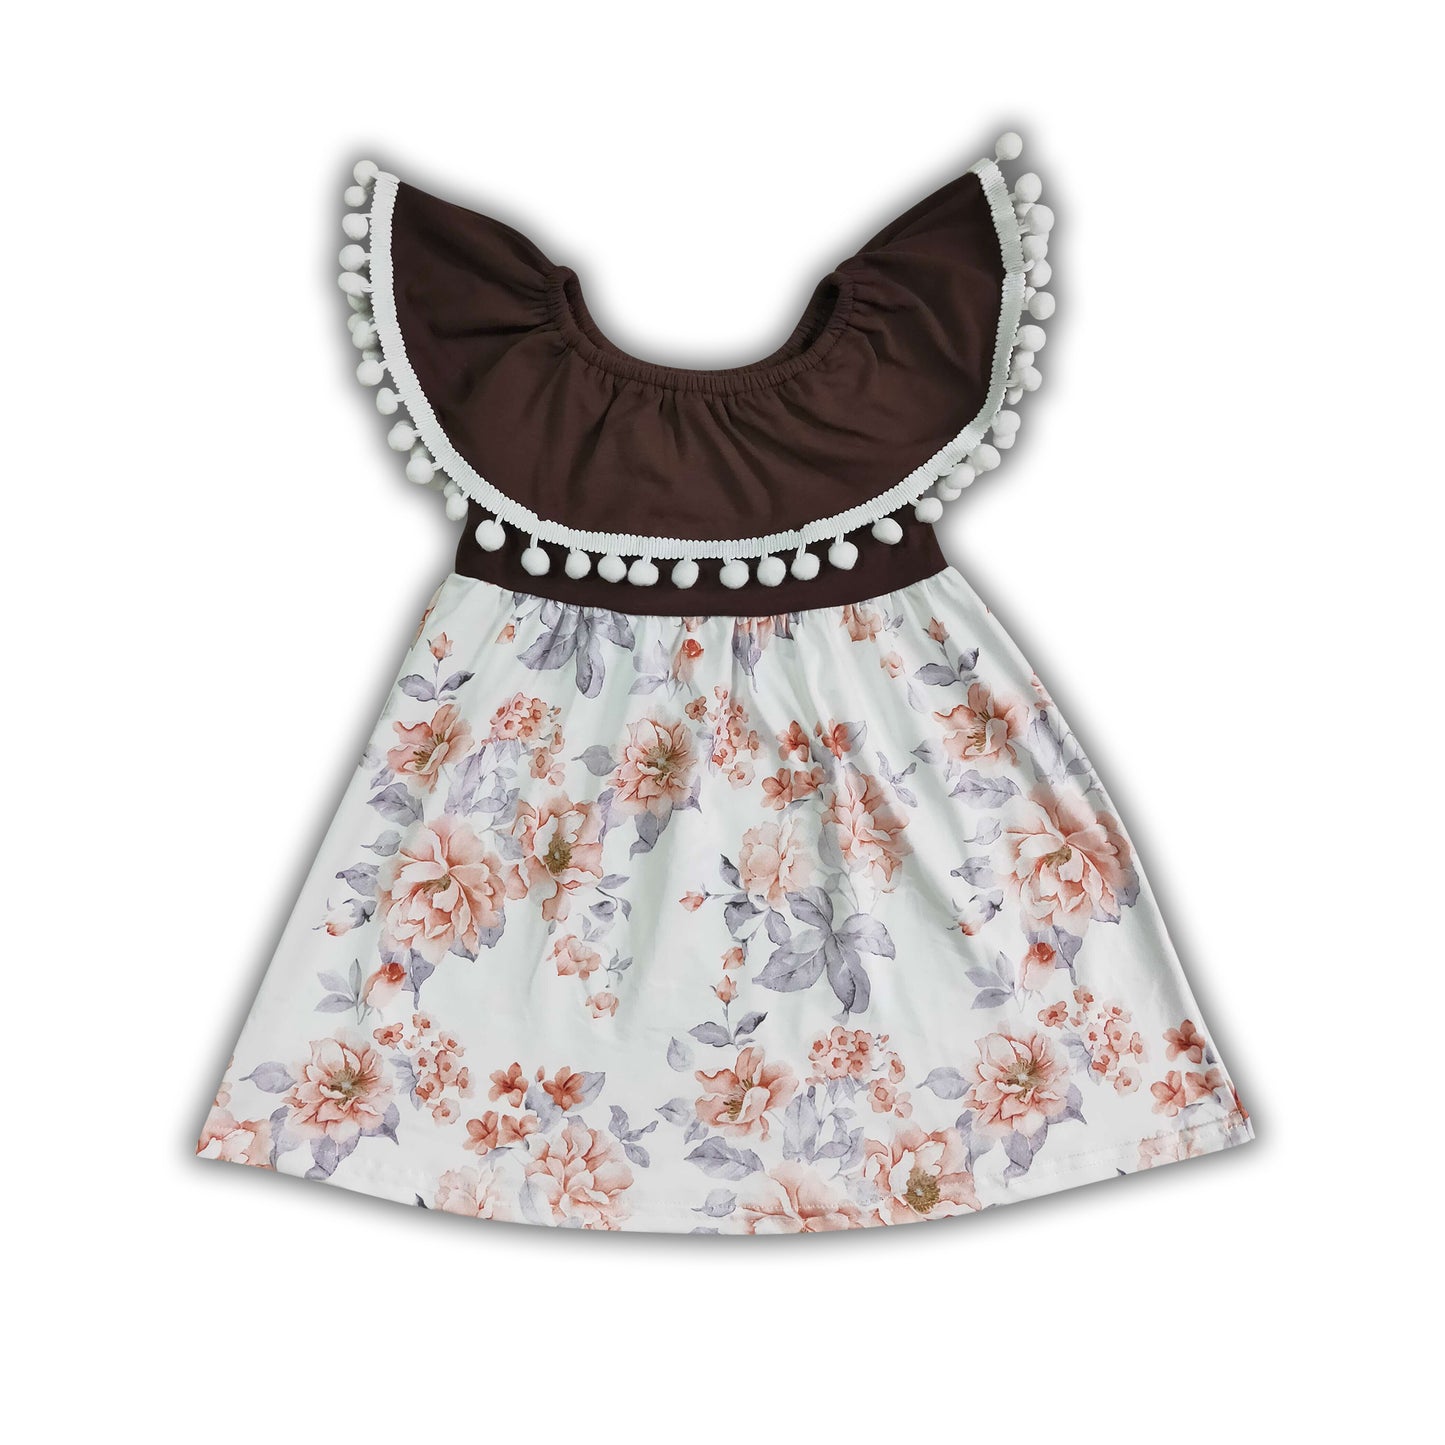 Pom pom brown floral kids girls summer dresses